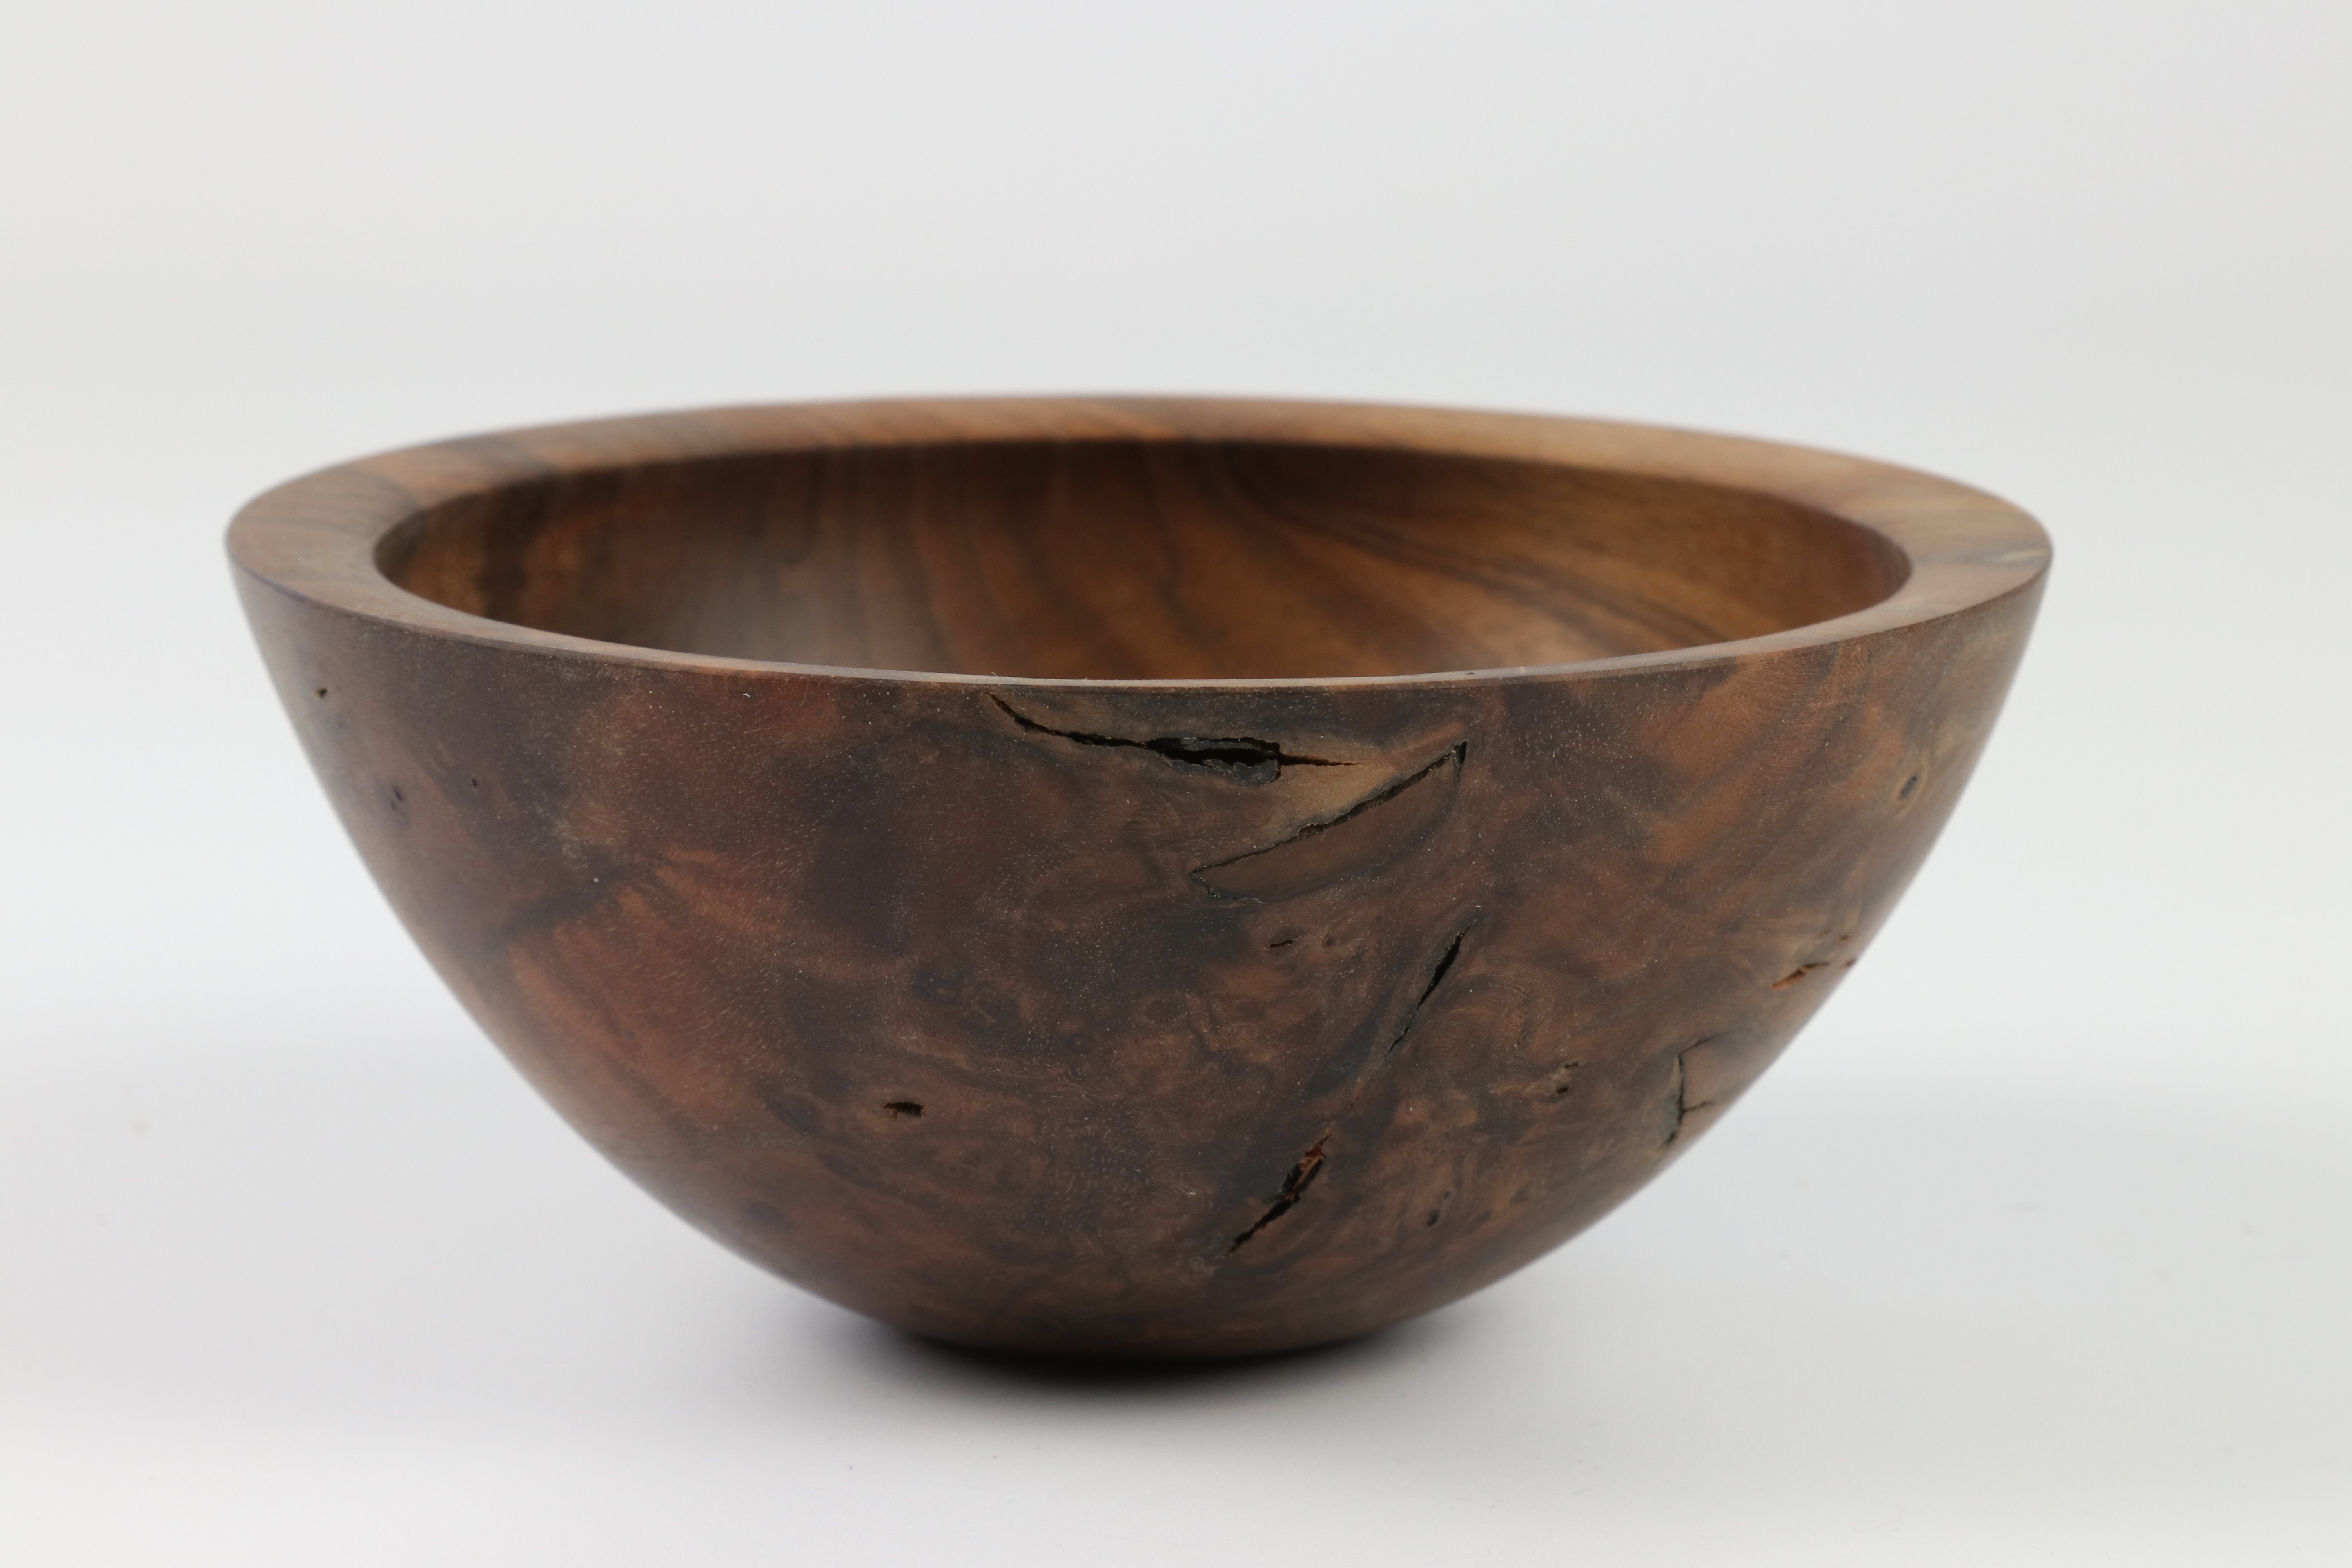 Les Thorne (UK) walnut bowl 6x14cm. Signed